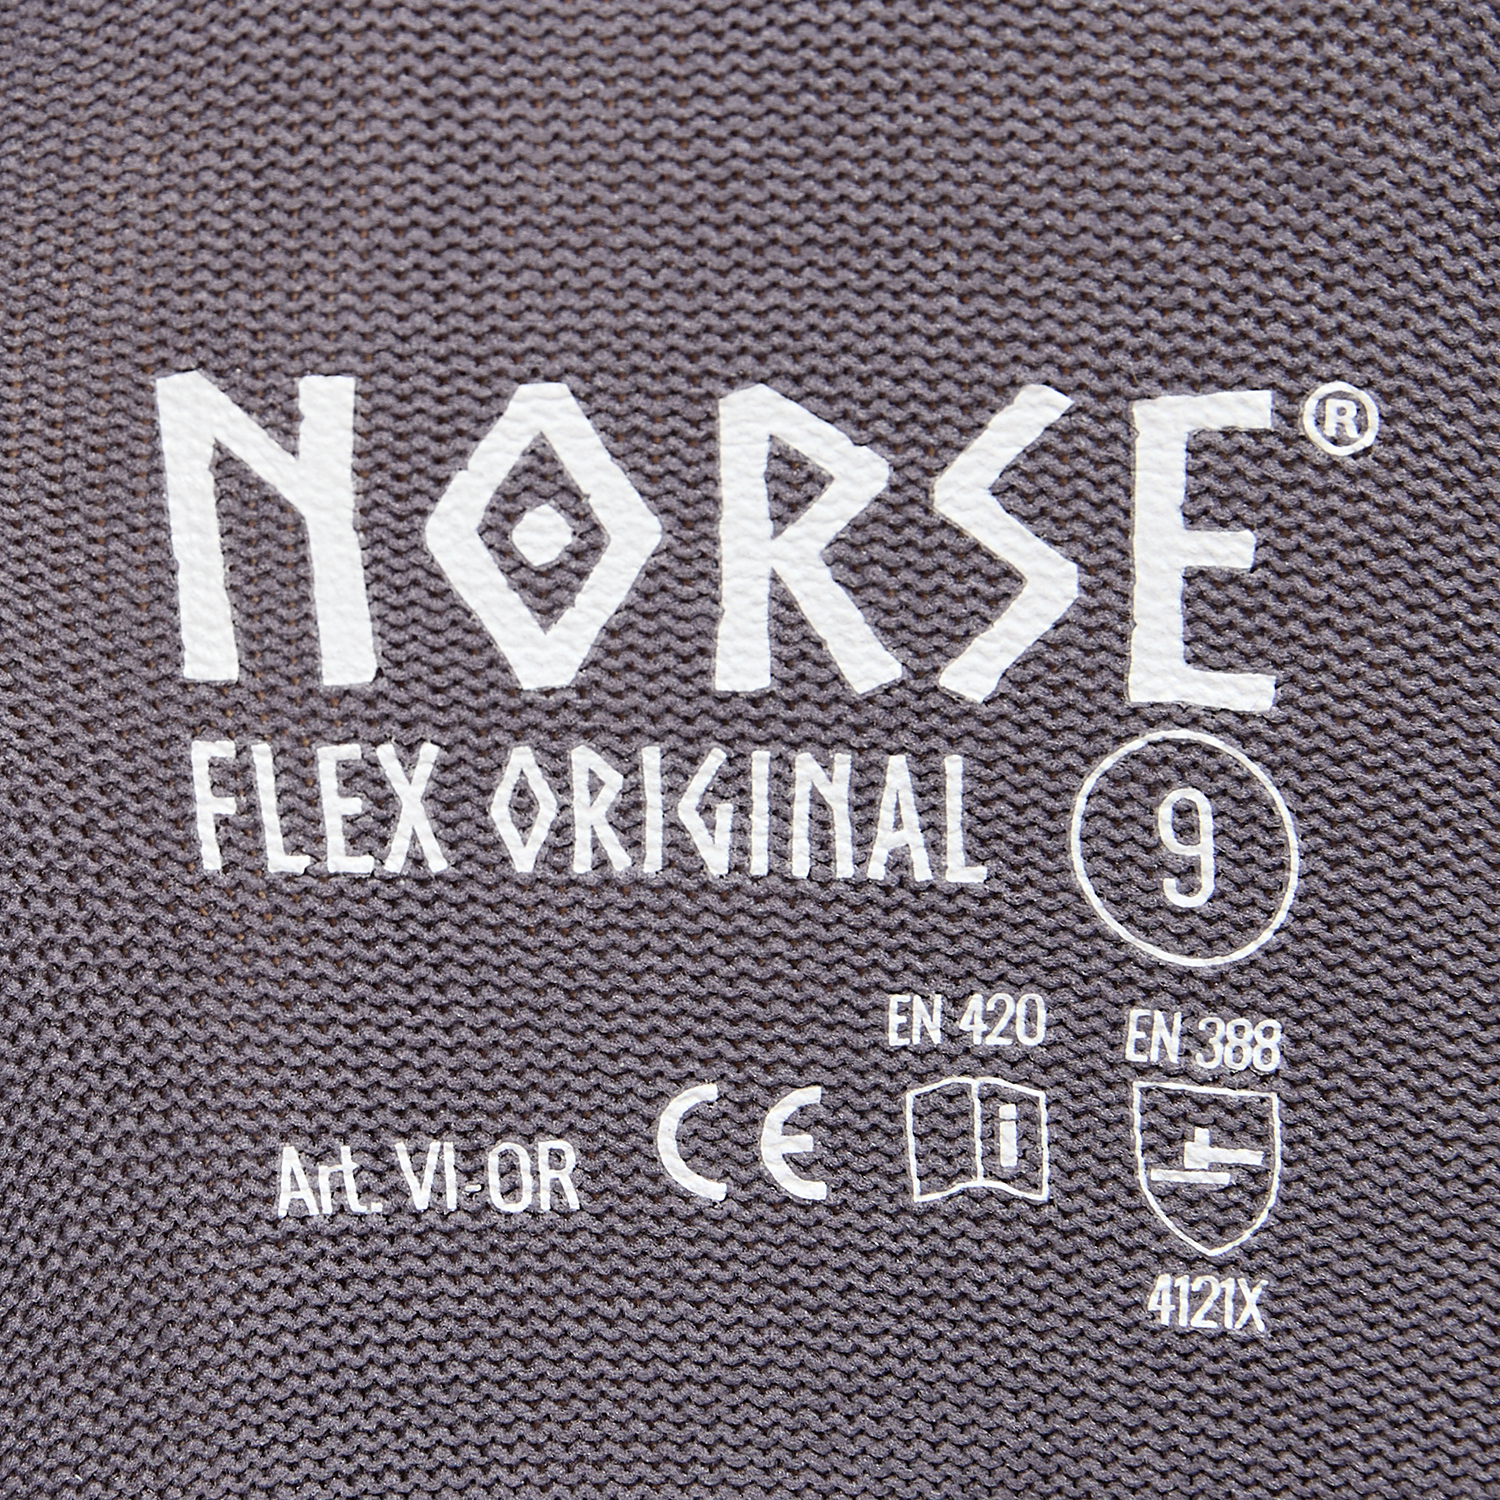 Guantes de montaje NORSE Flex Original talla 11